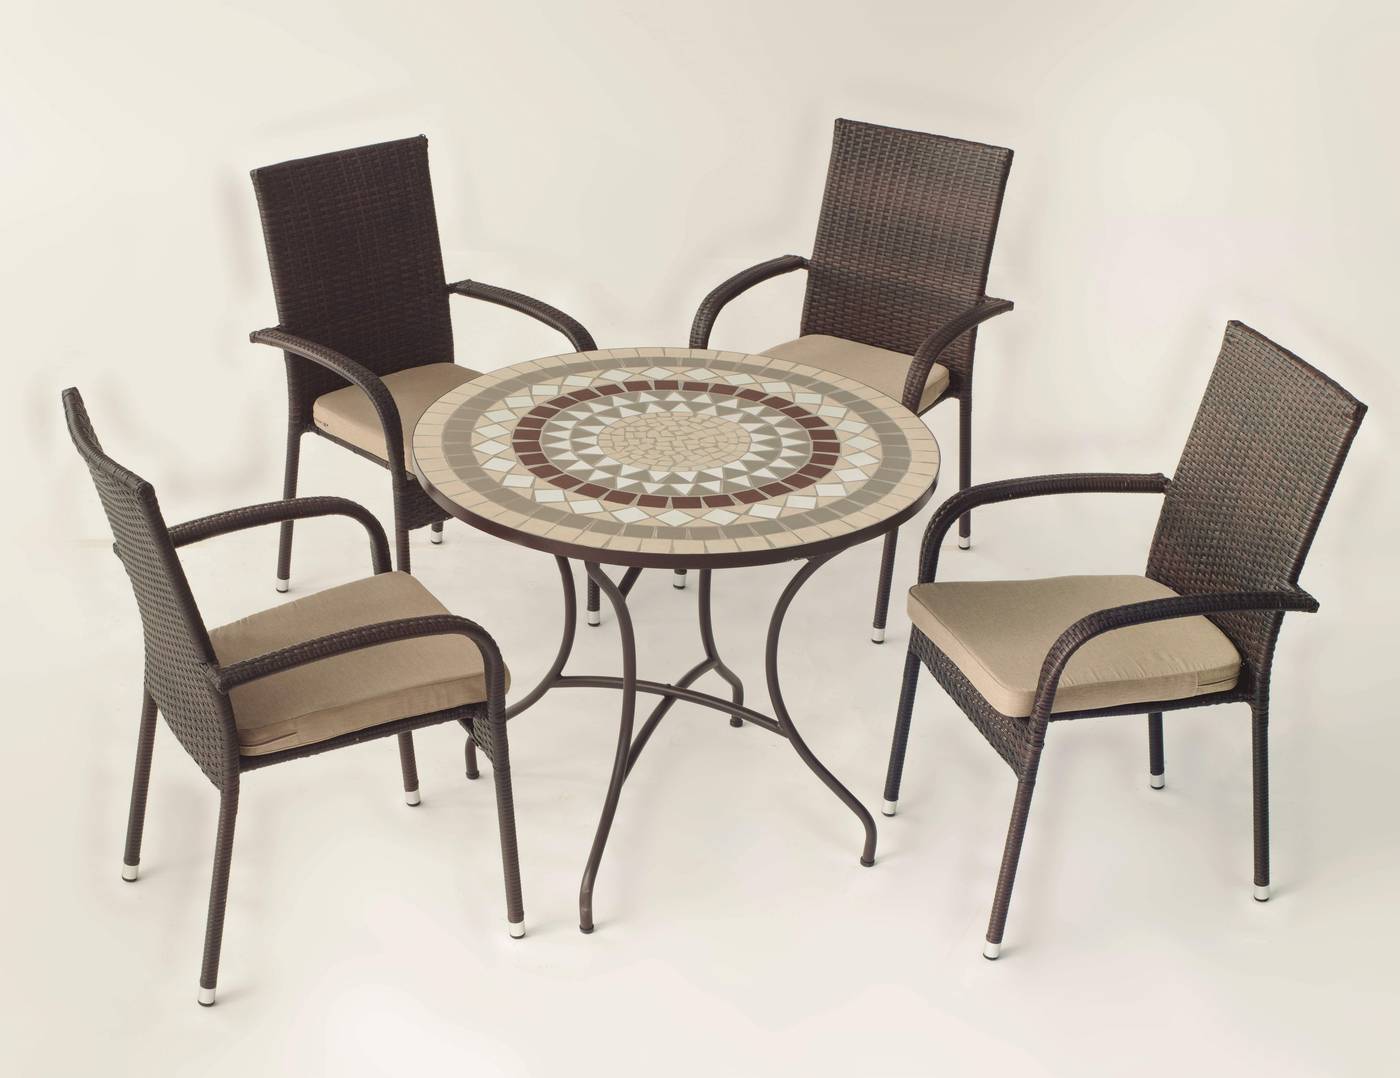 Conjunto Mosaico Camarines-Bergamo - Conjunto de forja color marrón: mesa con tablero mosaico de 90 cm + 4 sillones de ratán sintético con cojines.